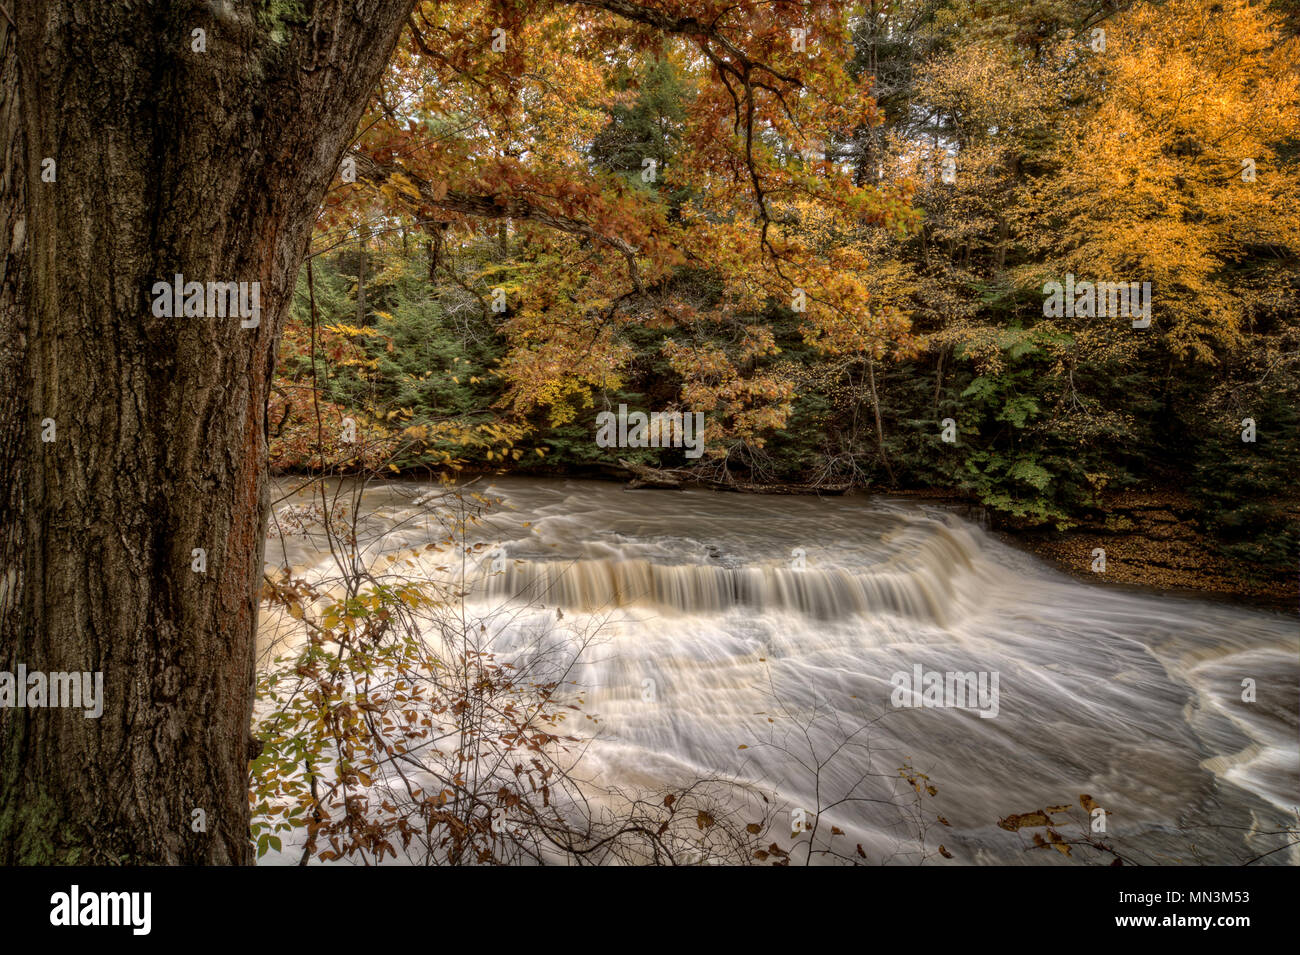 Belles couleurs d'automne sur les arbres ce châssis large cascade. La cascade est appelé Quarry Rock Falls, en dépit Réservation, Cleveland Ohio Banque D'Images